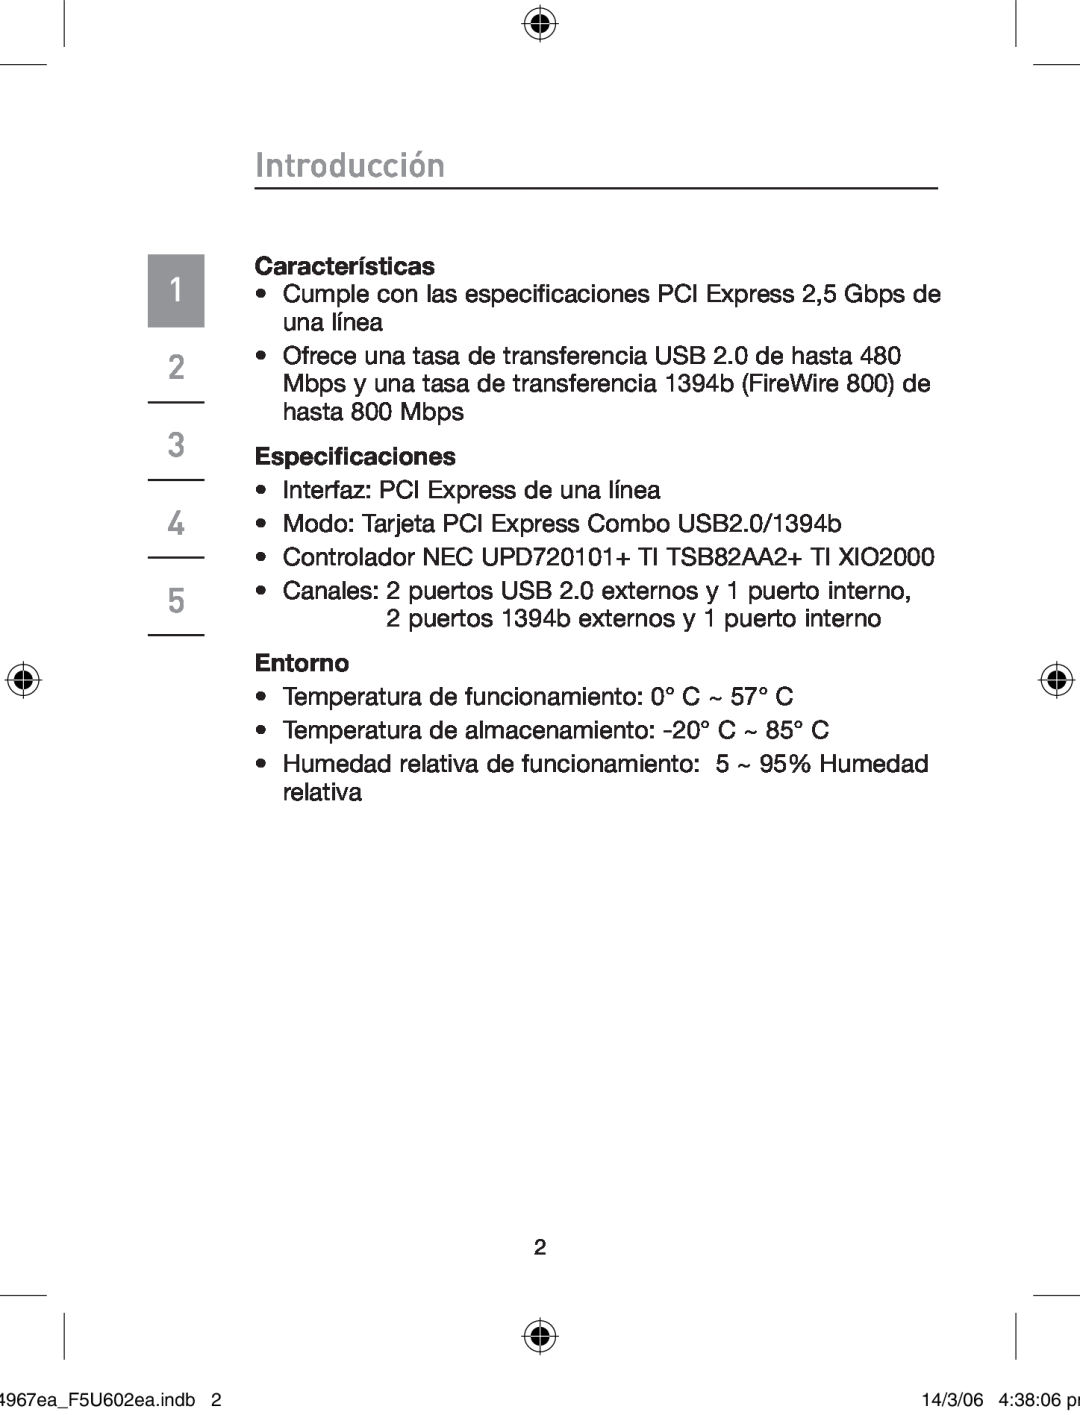 Belkin F5U602EA user manual Introducción, Características, Especificaciones, Entorno 